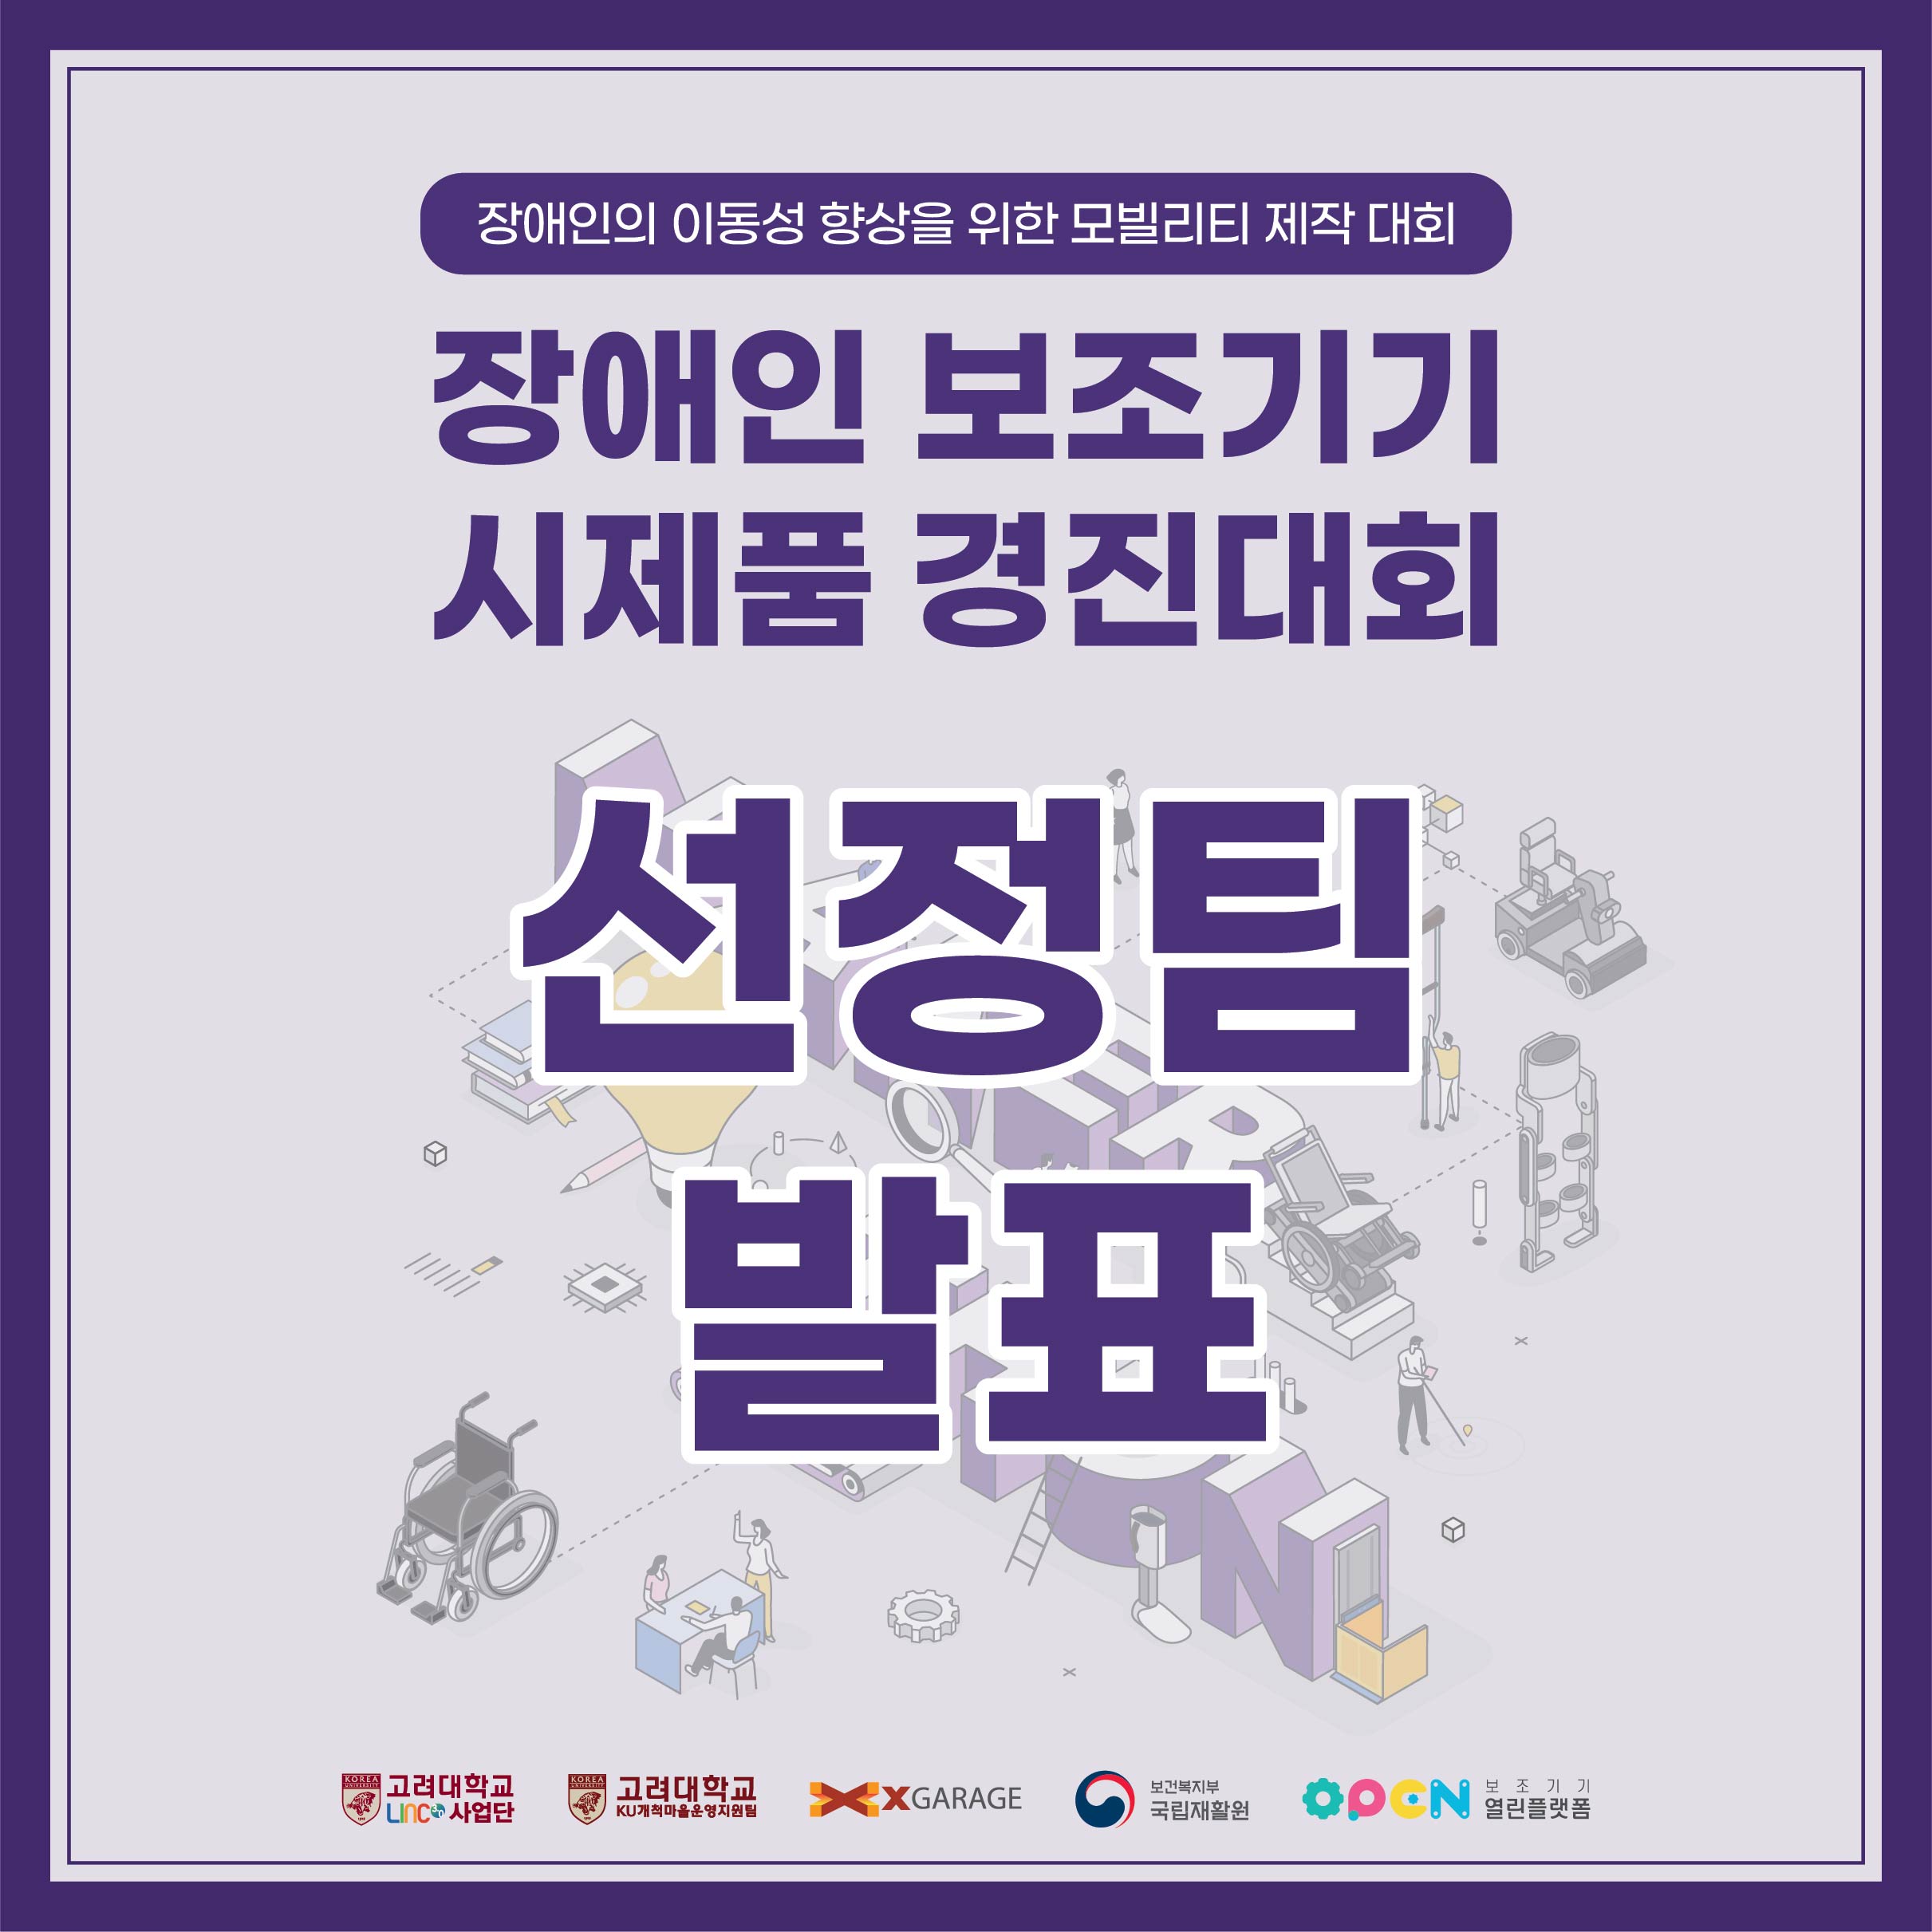 [결과발표] 장애인보조기기 경진대회 선정팀 발표